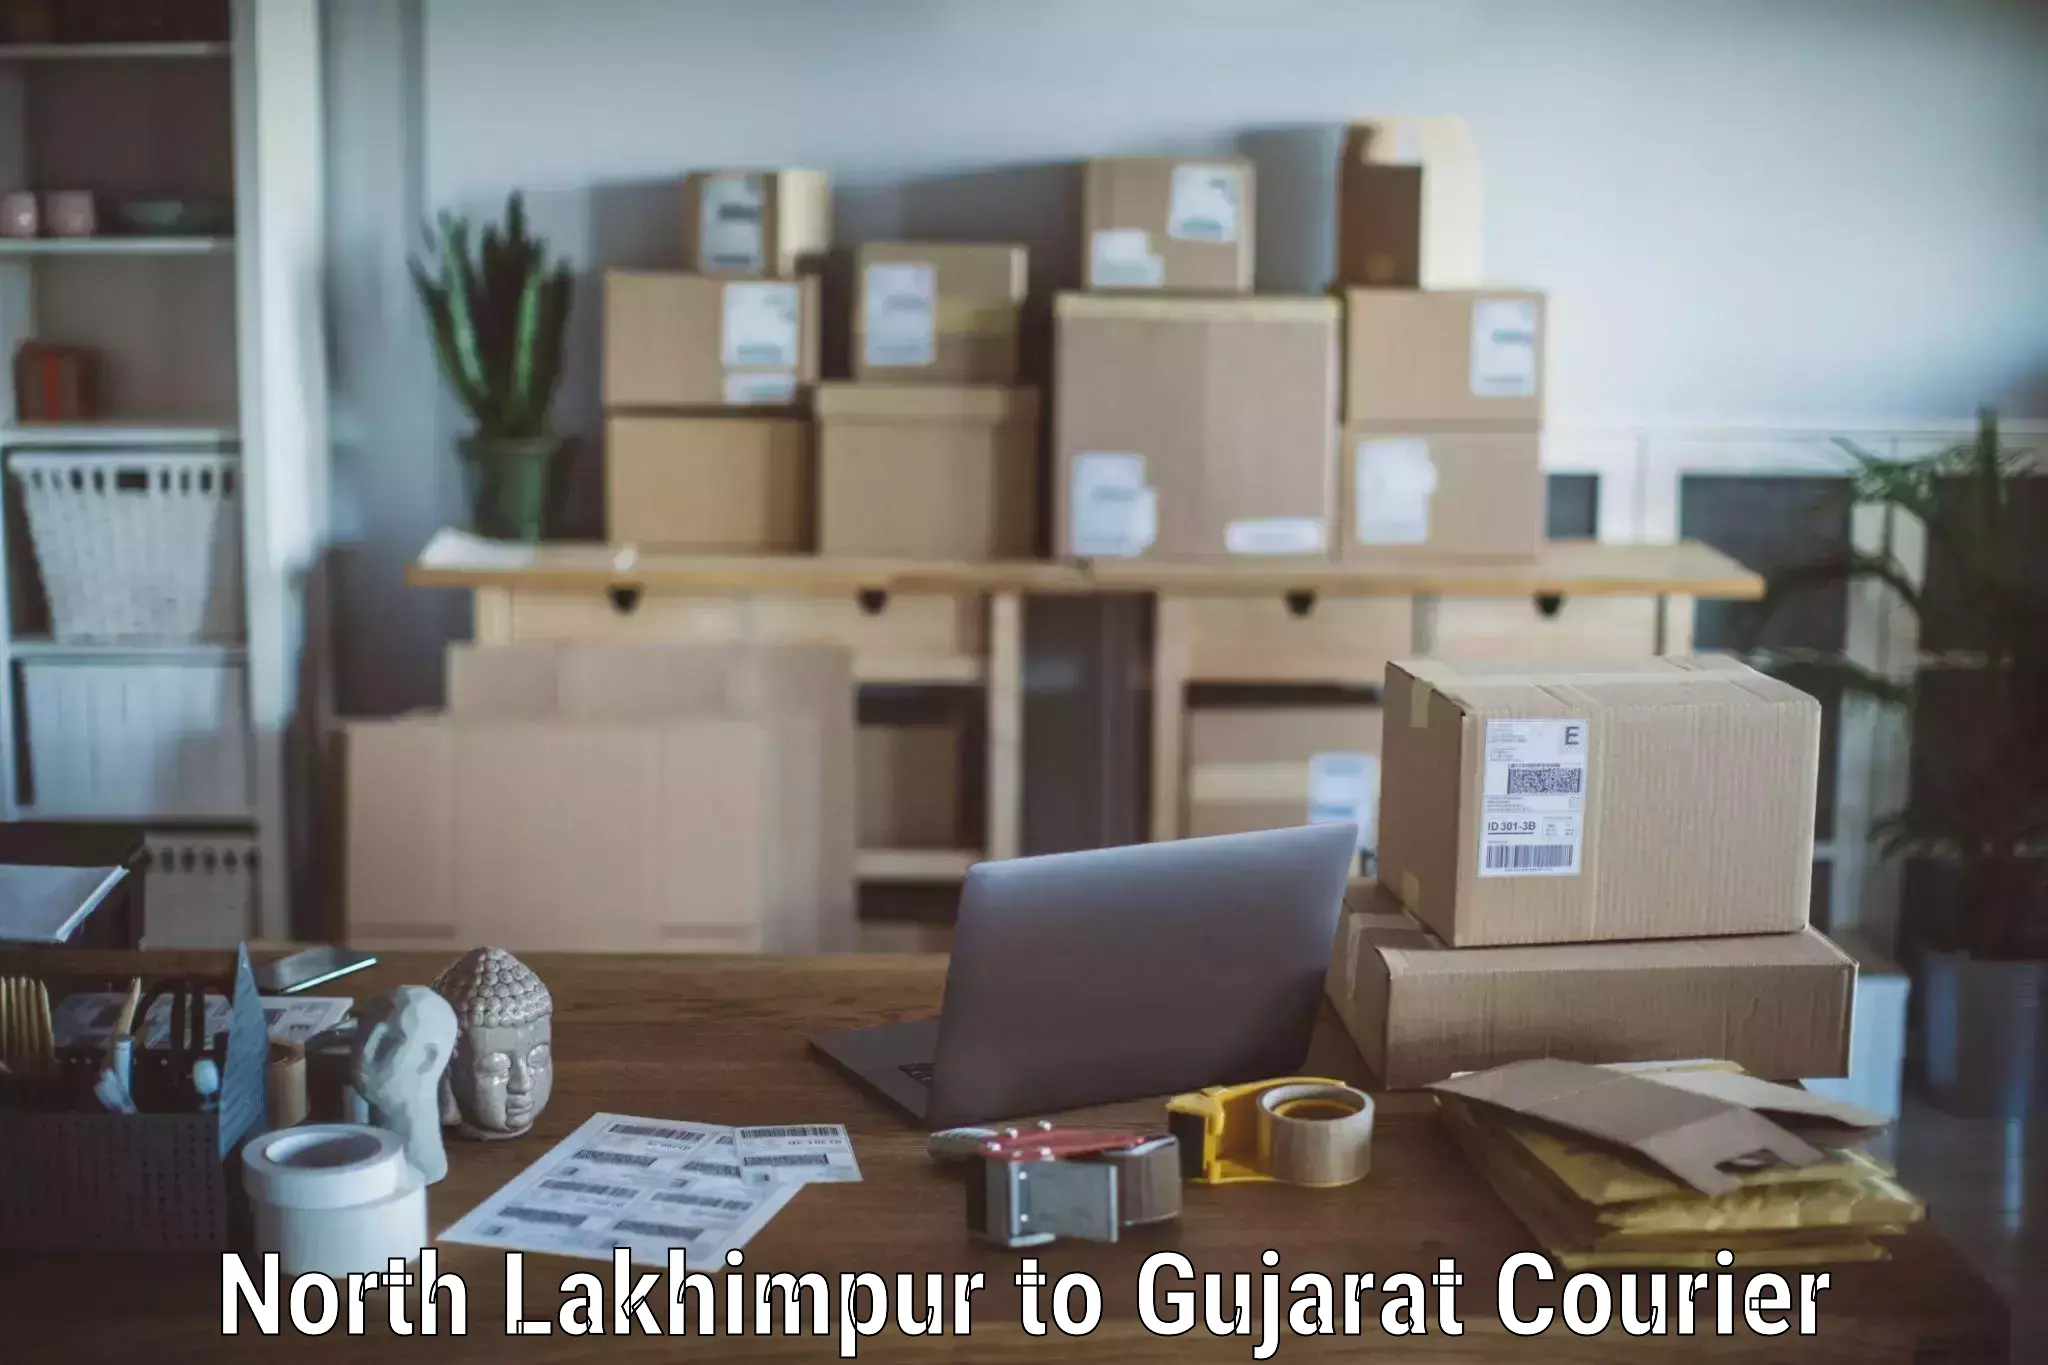 Furniture transport experts North Lakhimpur to Gujarat